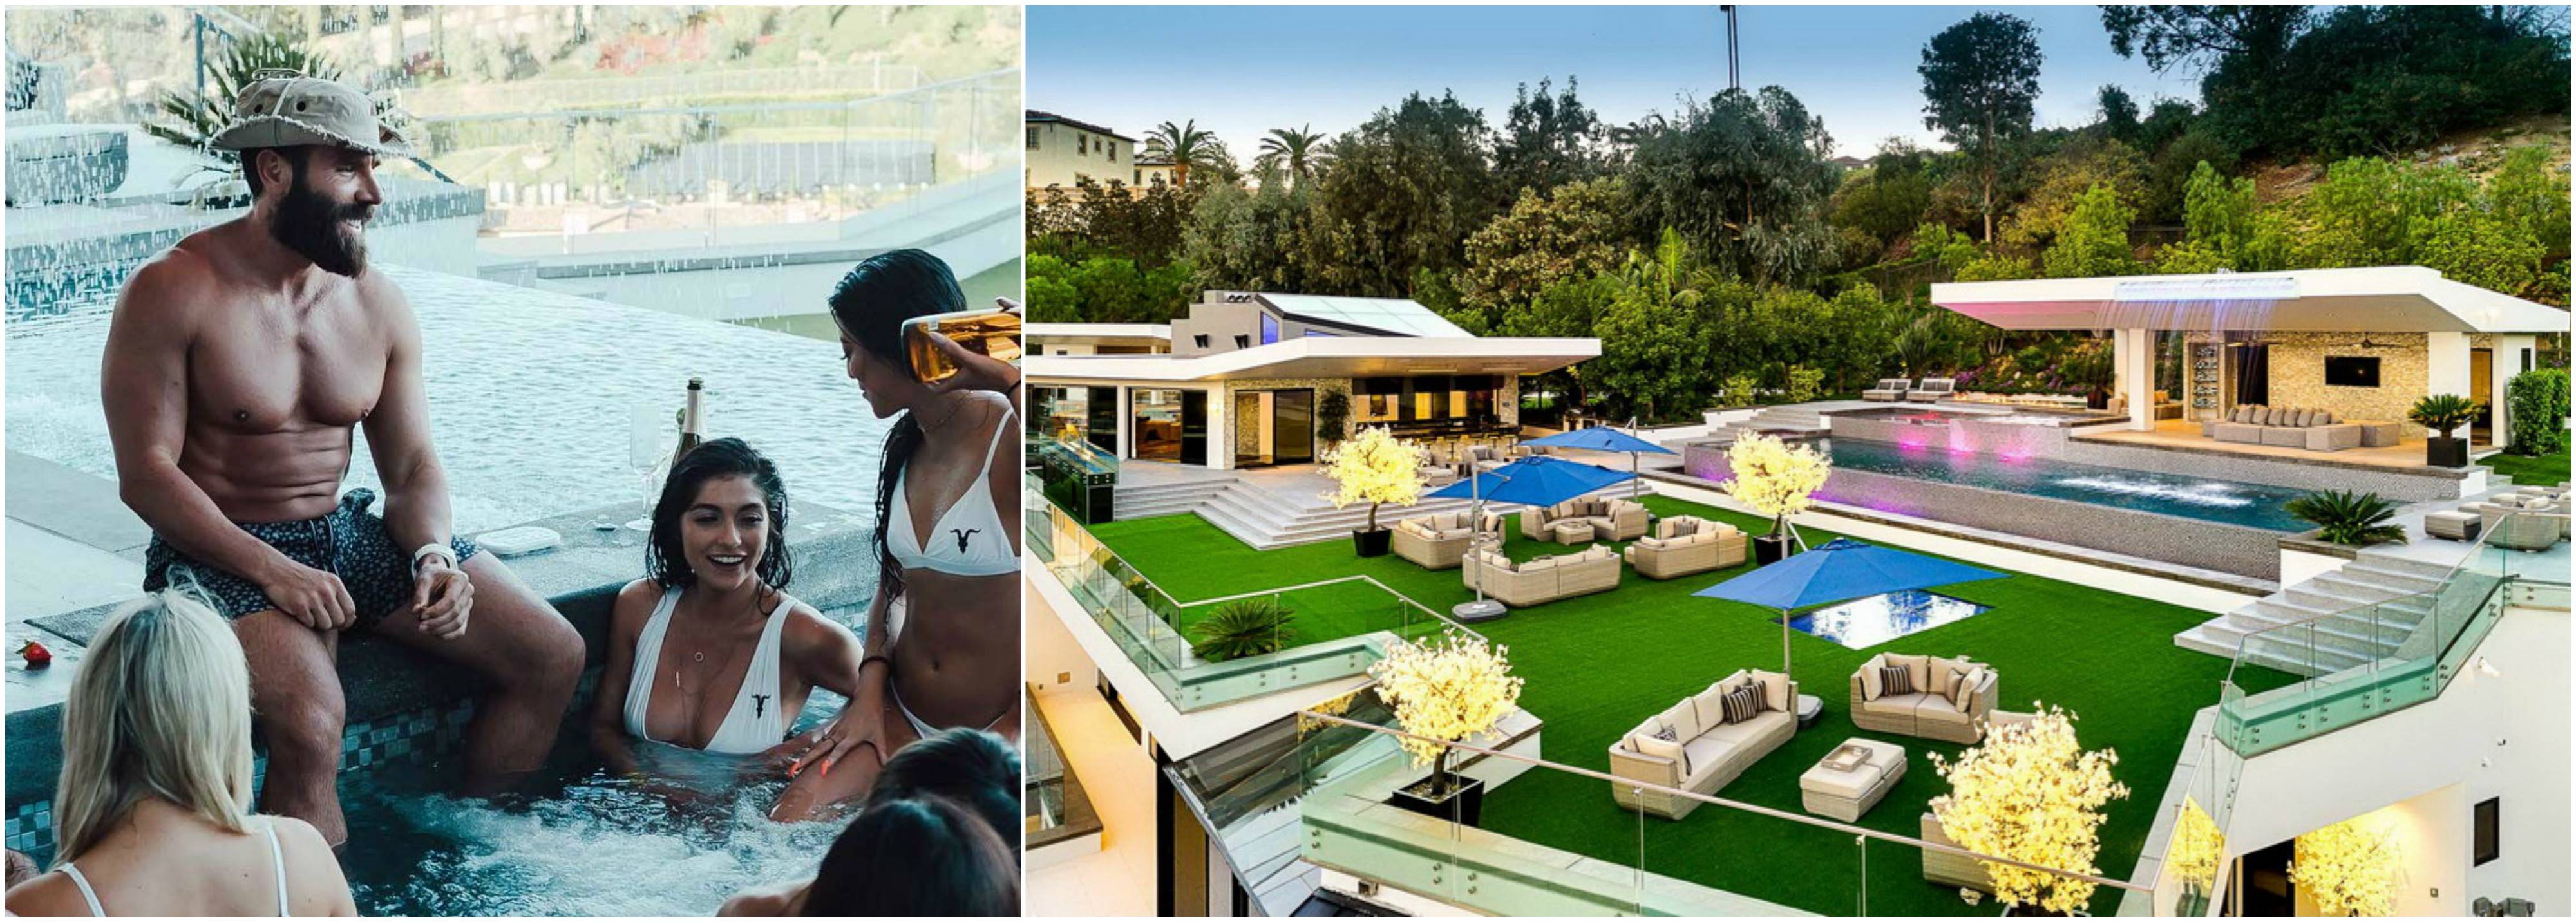 La mansión de Dan Bilzerian con piscina y chicas calientes en Los Ángeles